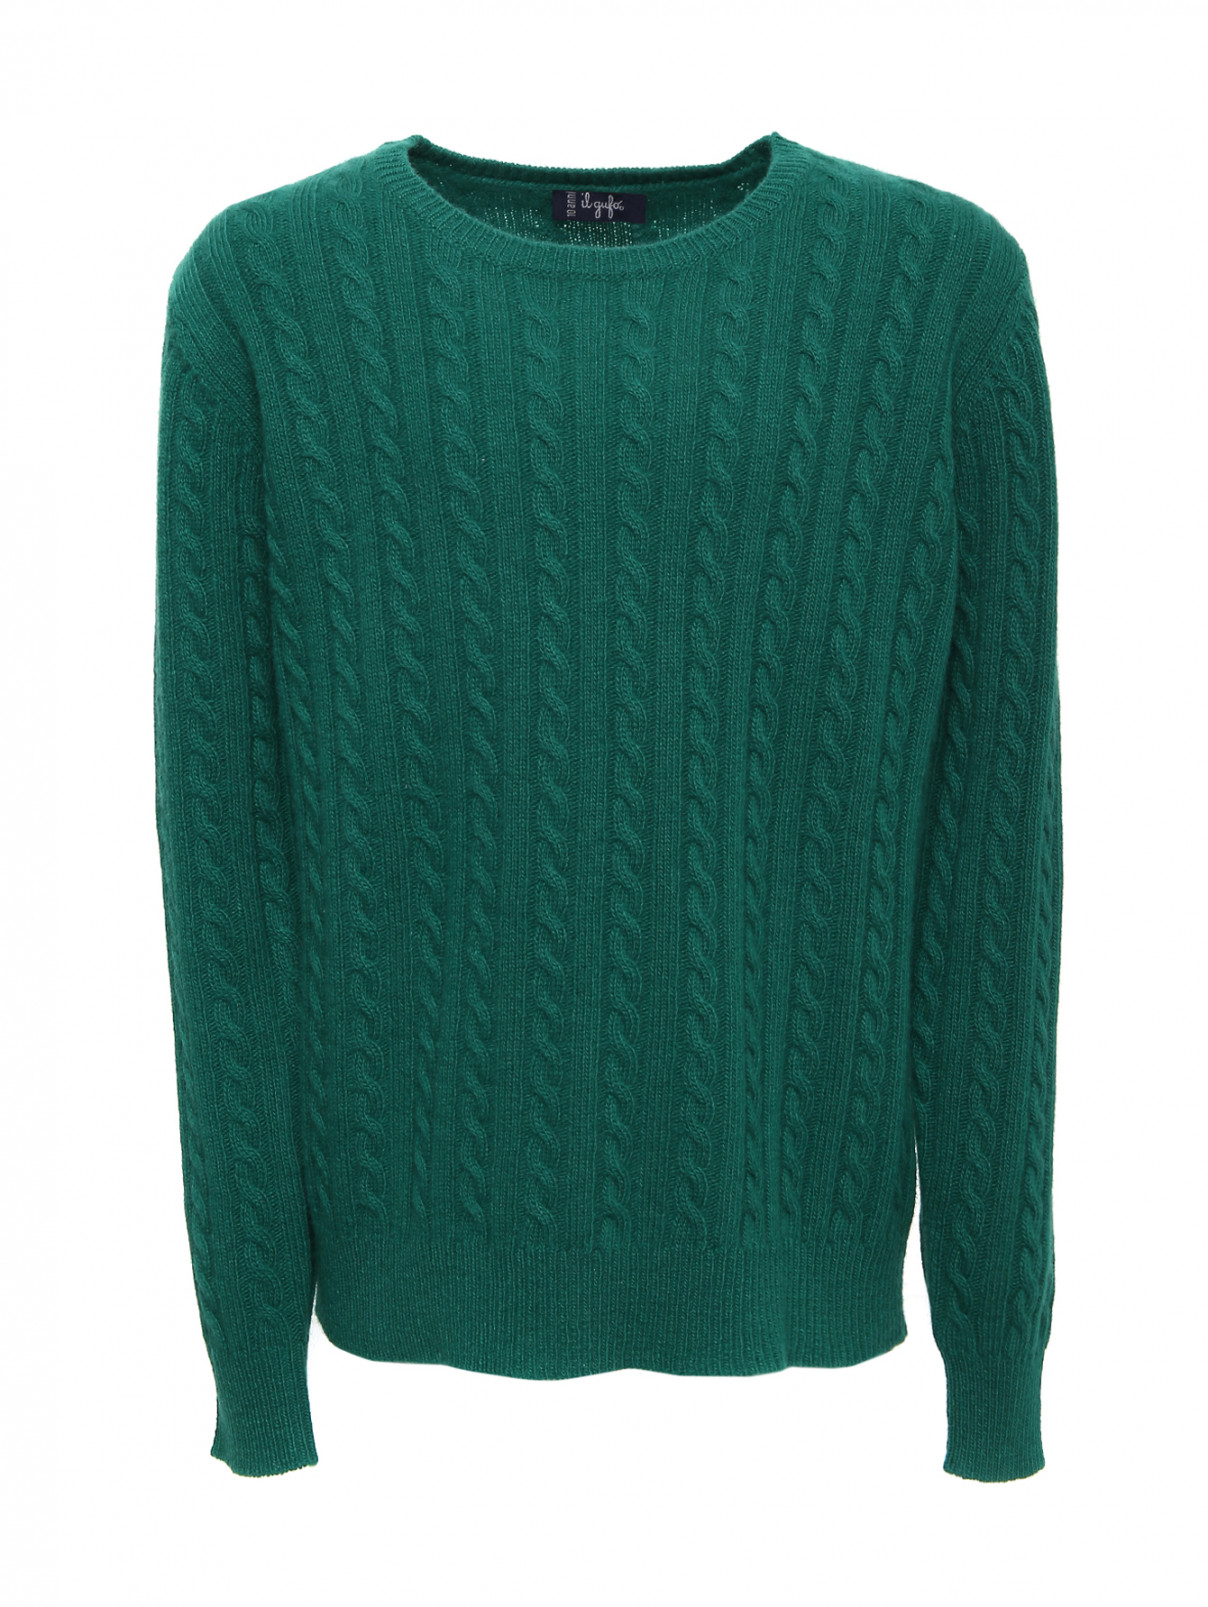 Джемпер ажурной вязки из шерсти Il Gufo  –  Общий вид  – Цвет:  Зеленый